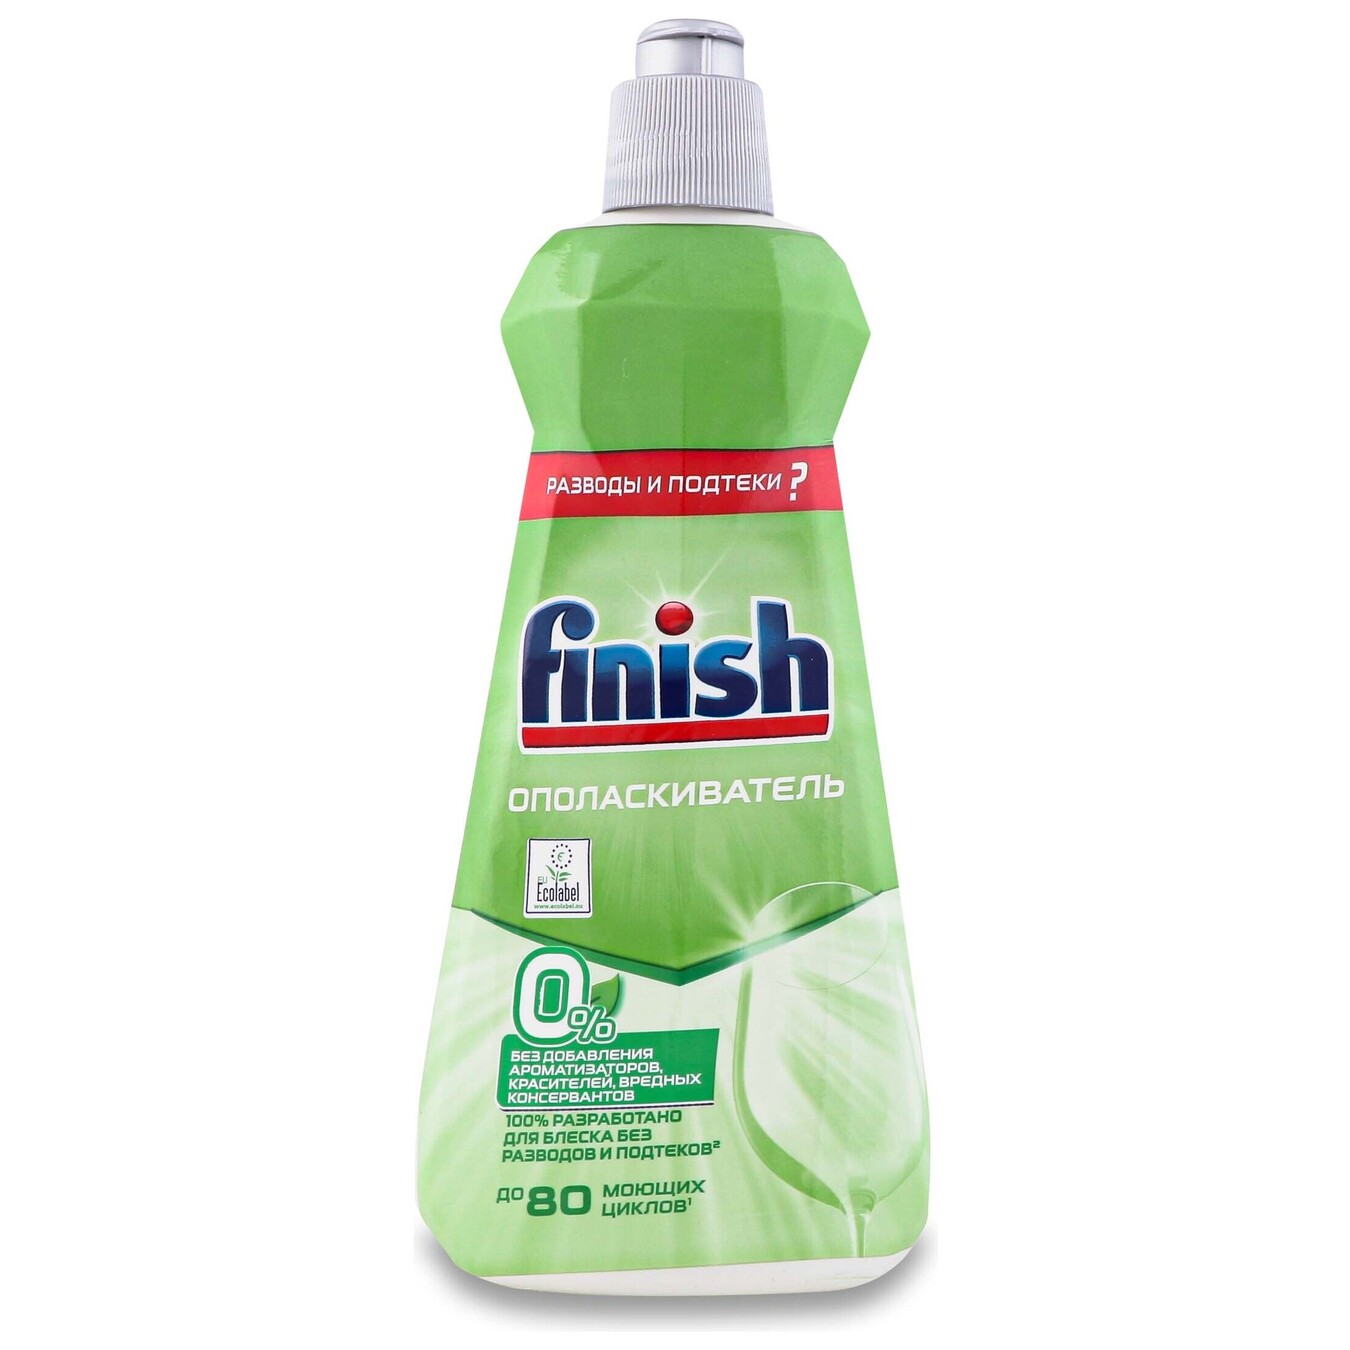 Ополаскиватель Finish Rinse для посуды в посудомоечных машинах 0% 400мл